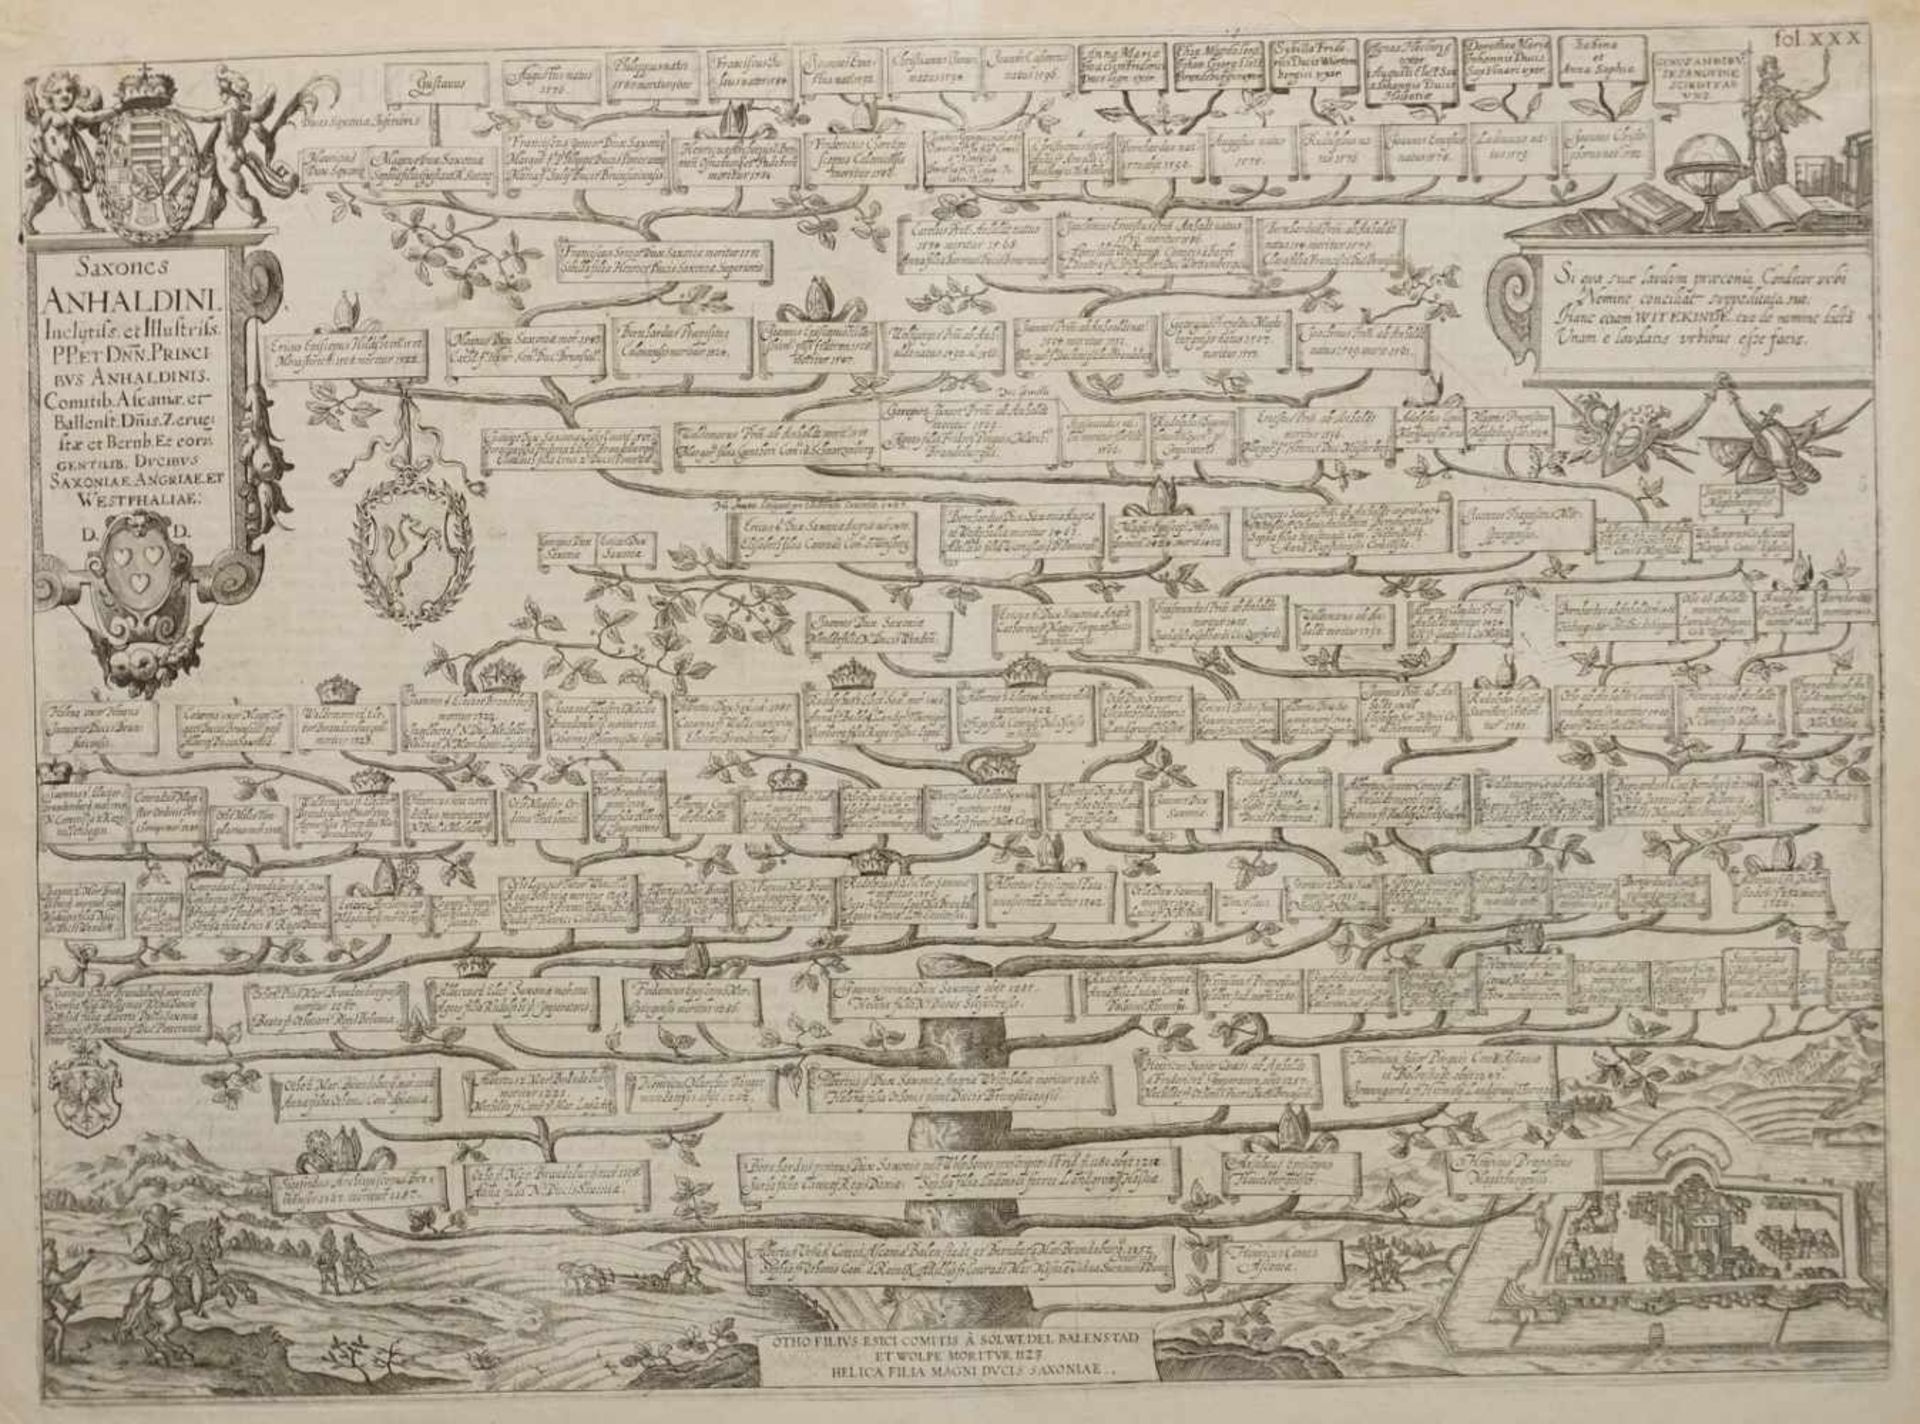 Antonius Albizzi, "Stammbaum der Anhaltiner"Folio-Kupferstich/Büttenpapier, Verso Textauszug, aus "